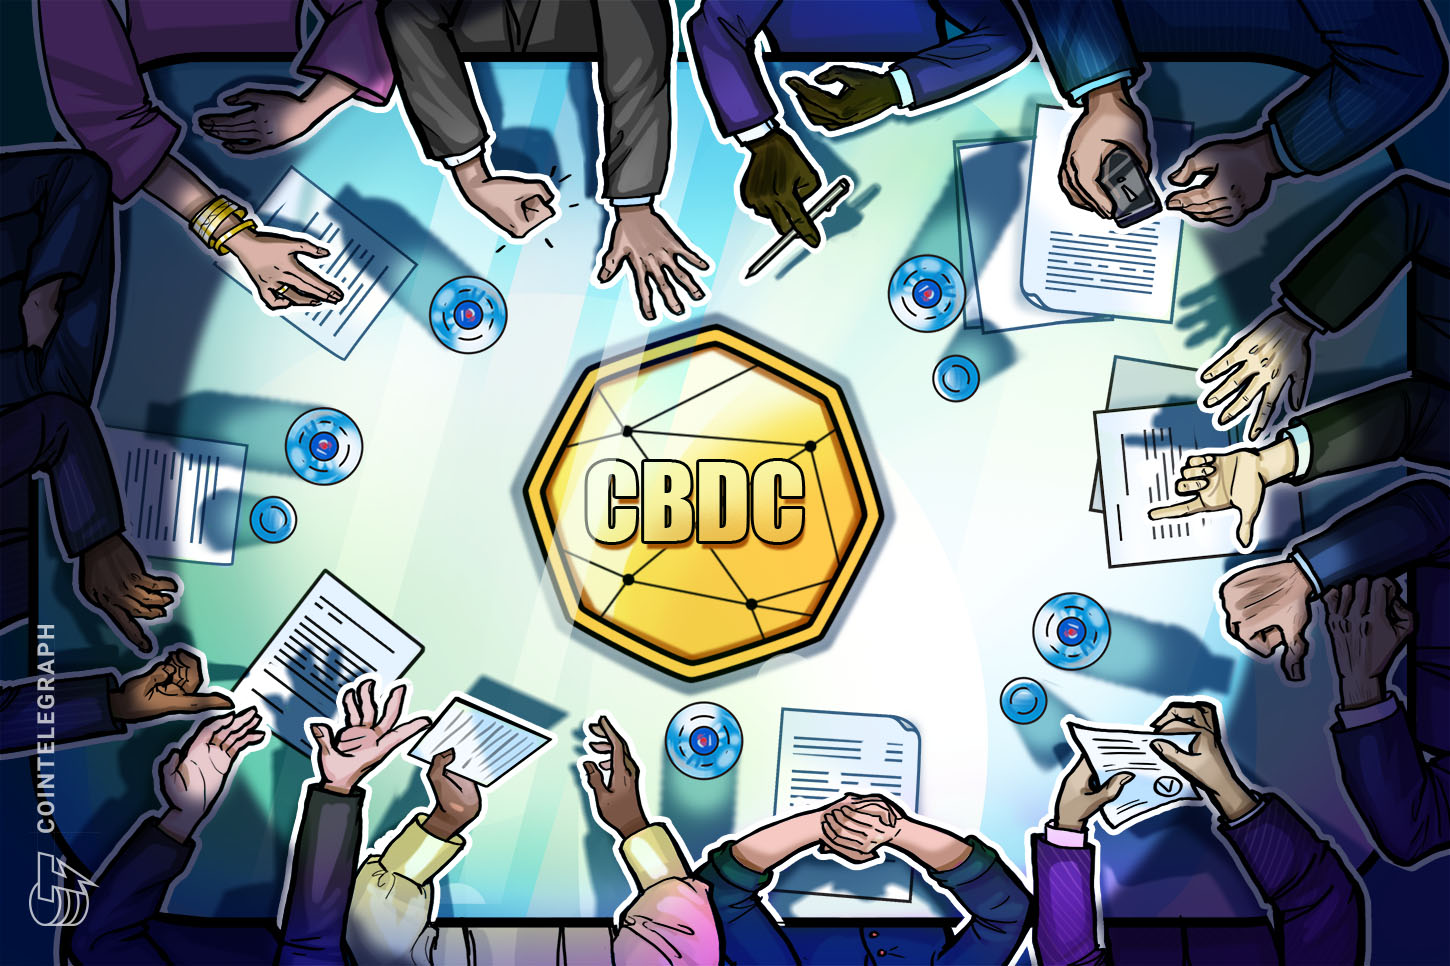 BIS 将启动稳定币监控项目并加大对 CBDC 实验的关注